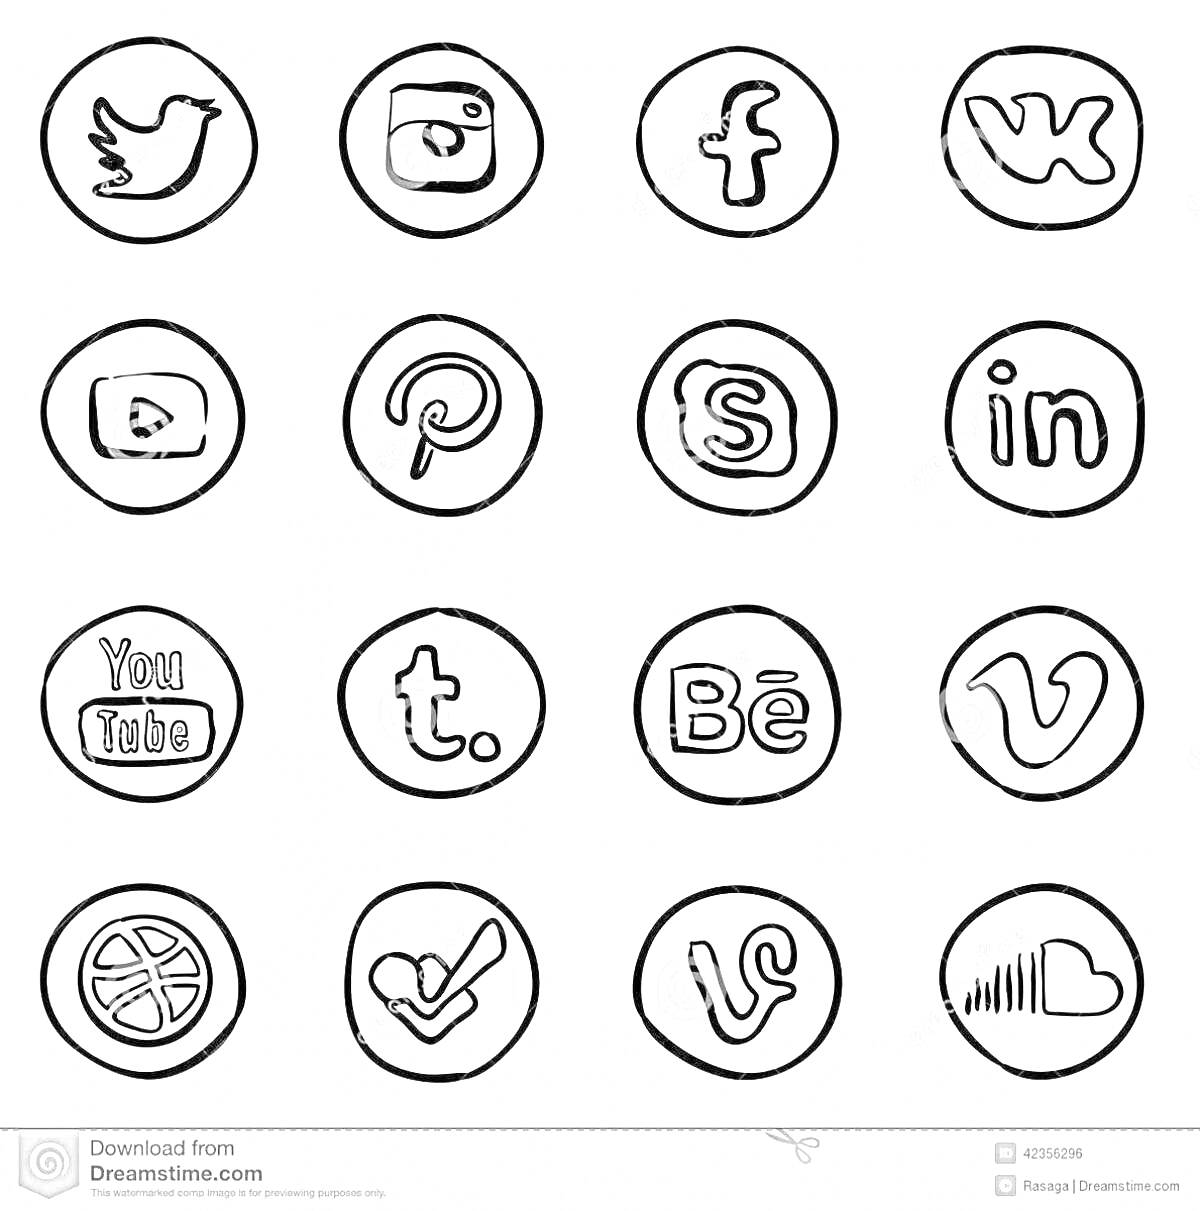 Логотипы популярных социальных сетей и приложений в круглой рамке - Twitter, Instagram, Facebook, ВКонтакте, YouTube, Pinterest, Skype, LinkedIn, YouTube, Tumblr, Behance, Vimeo, Dribbble, Foursquare, Vine, SoundCloud